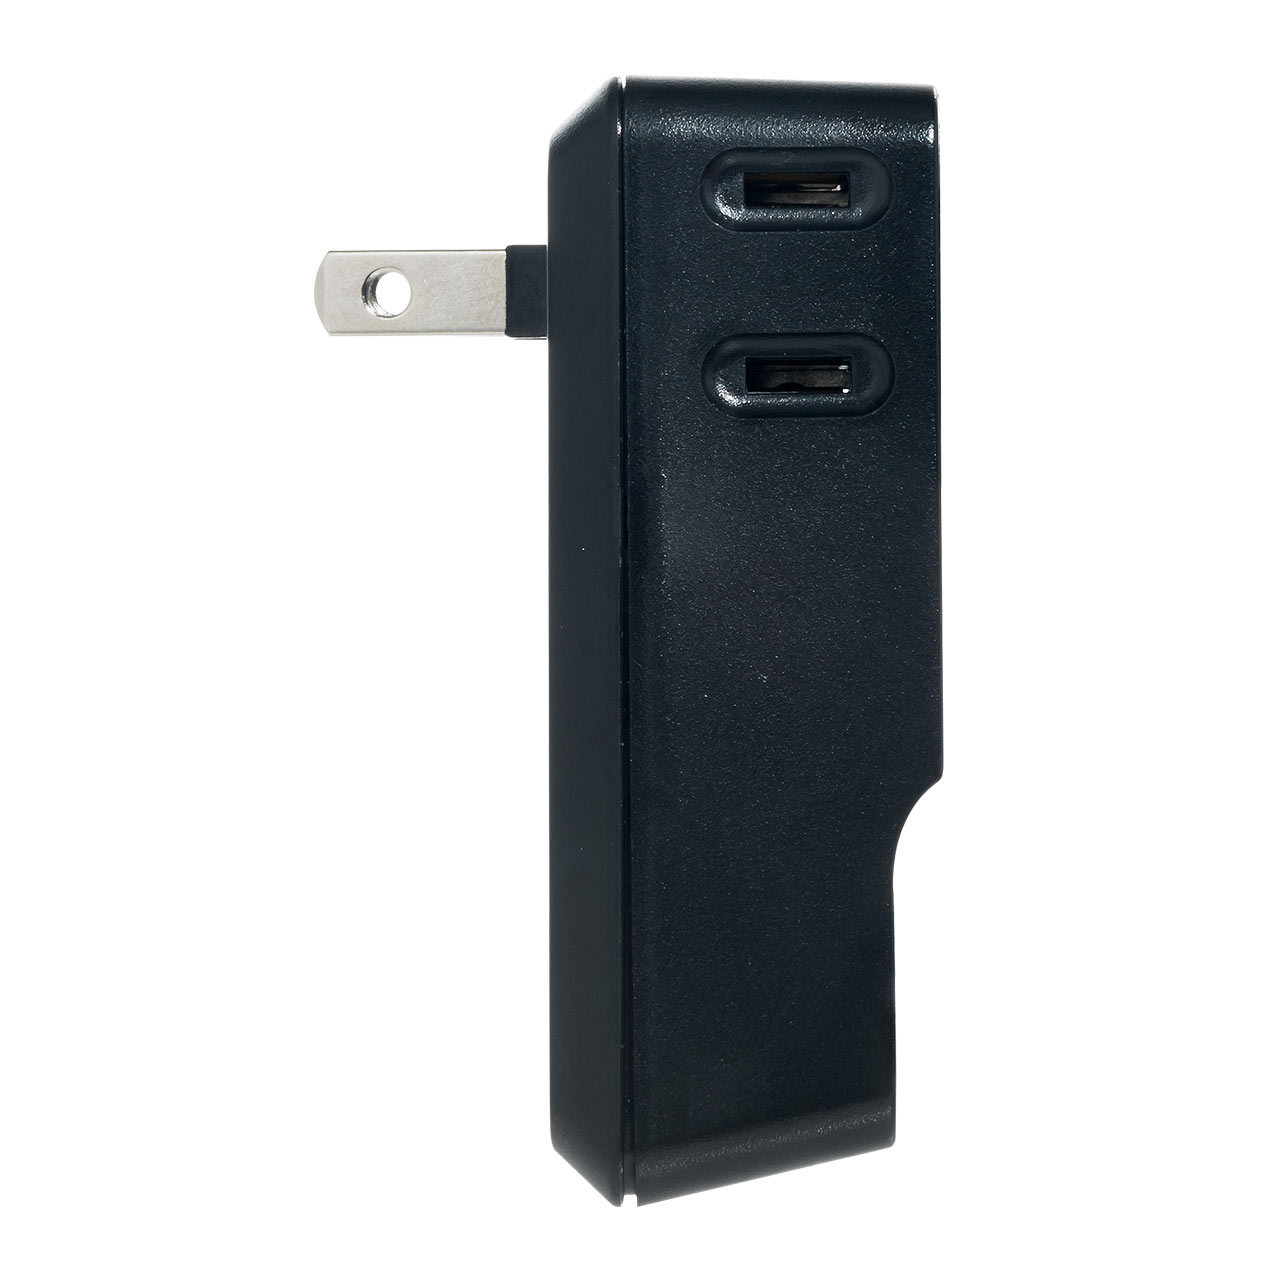 コンセントタップ付きUSB-ACアダプタ AC3ポート USB2ポート 2.4A ブラック 複数ポート 絶縁キャップ付き 小型 コンパクト 700-AC016BK